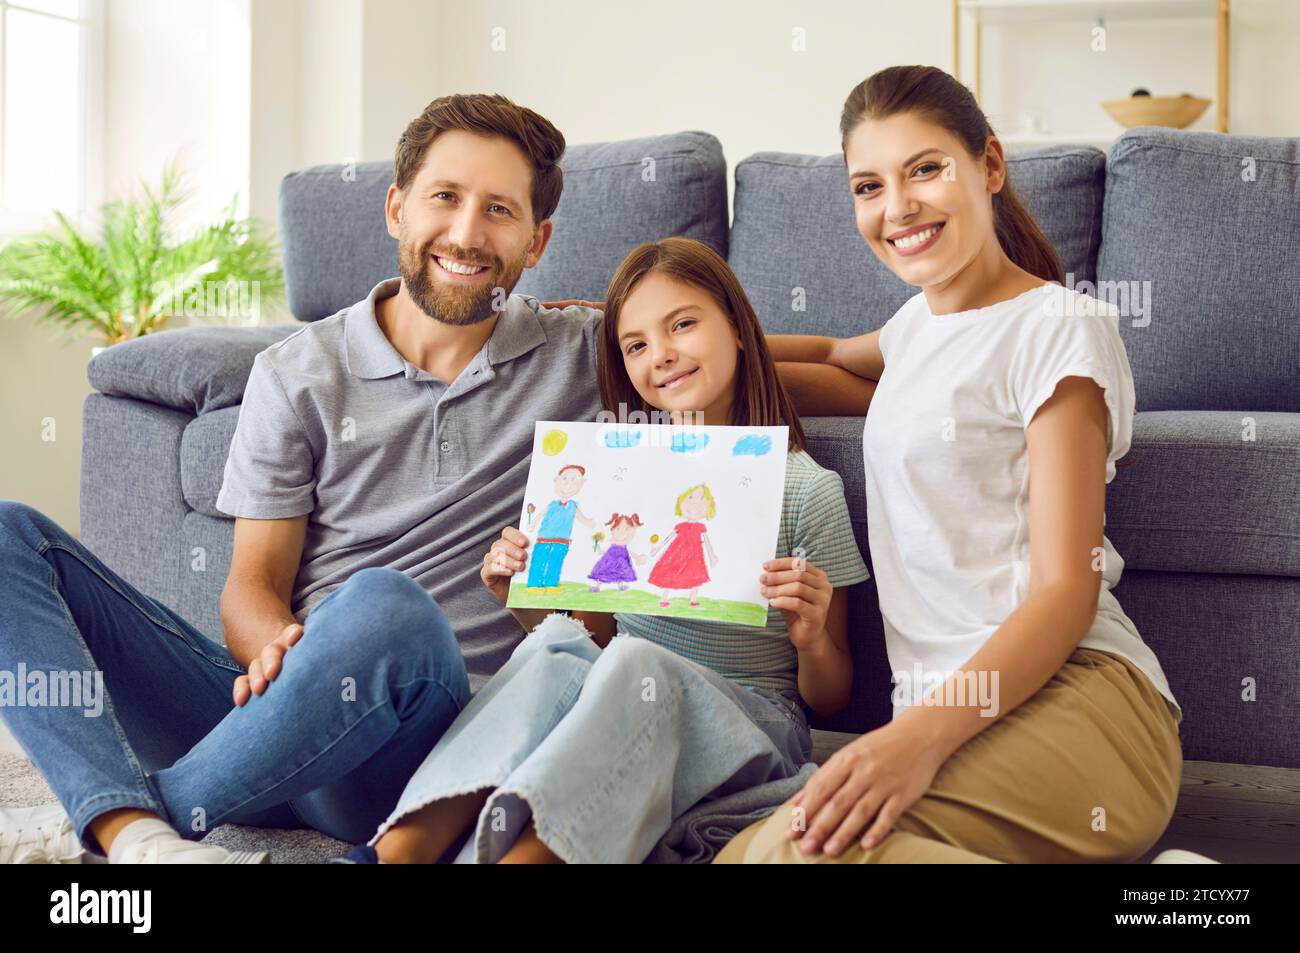 Lächelndes Mädchen, das auf dem Boden sitzt und die Eltern zu Hause zeigen, wie eine glückliche Familie gezeichnet ist. Stockfoto